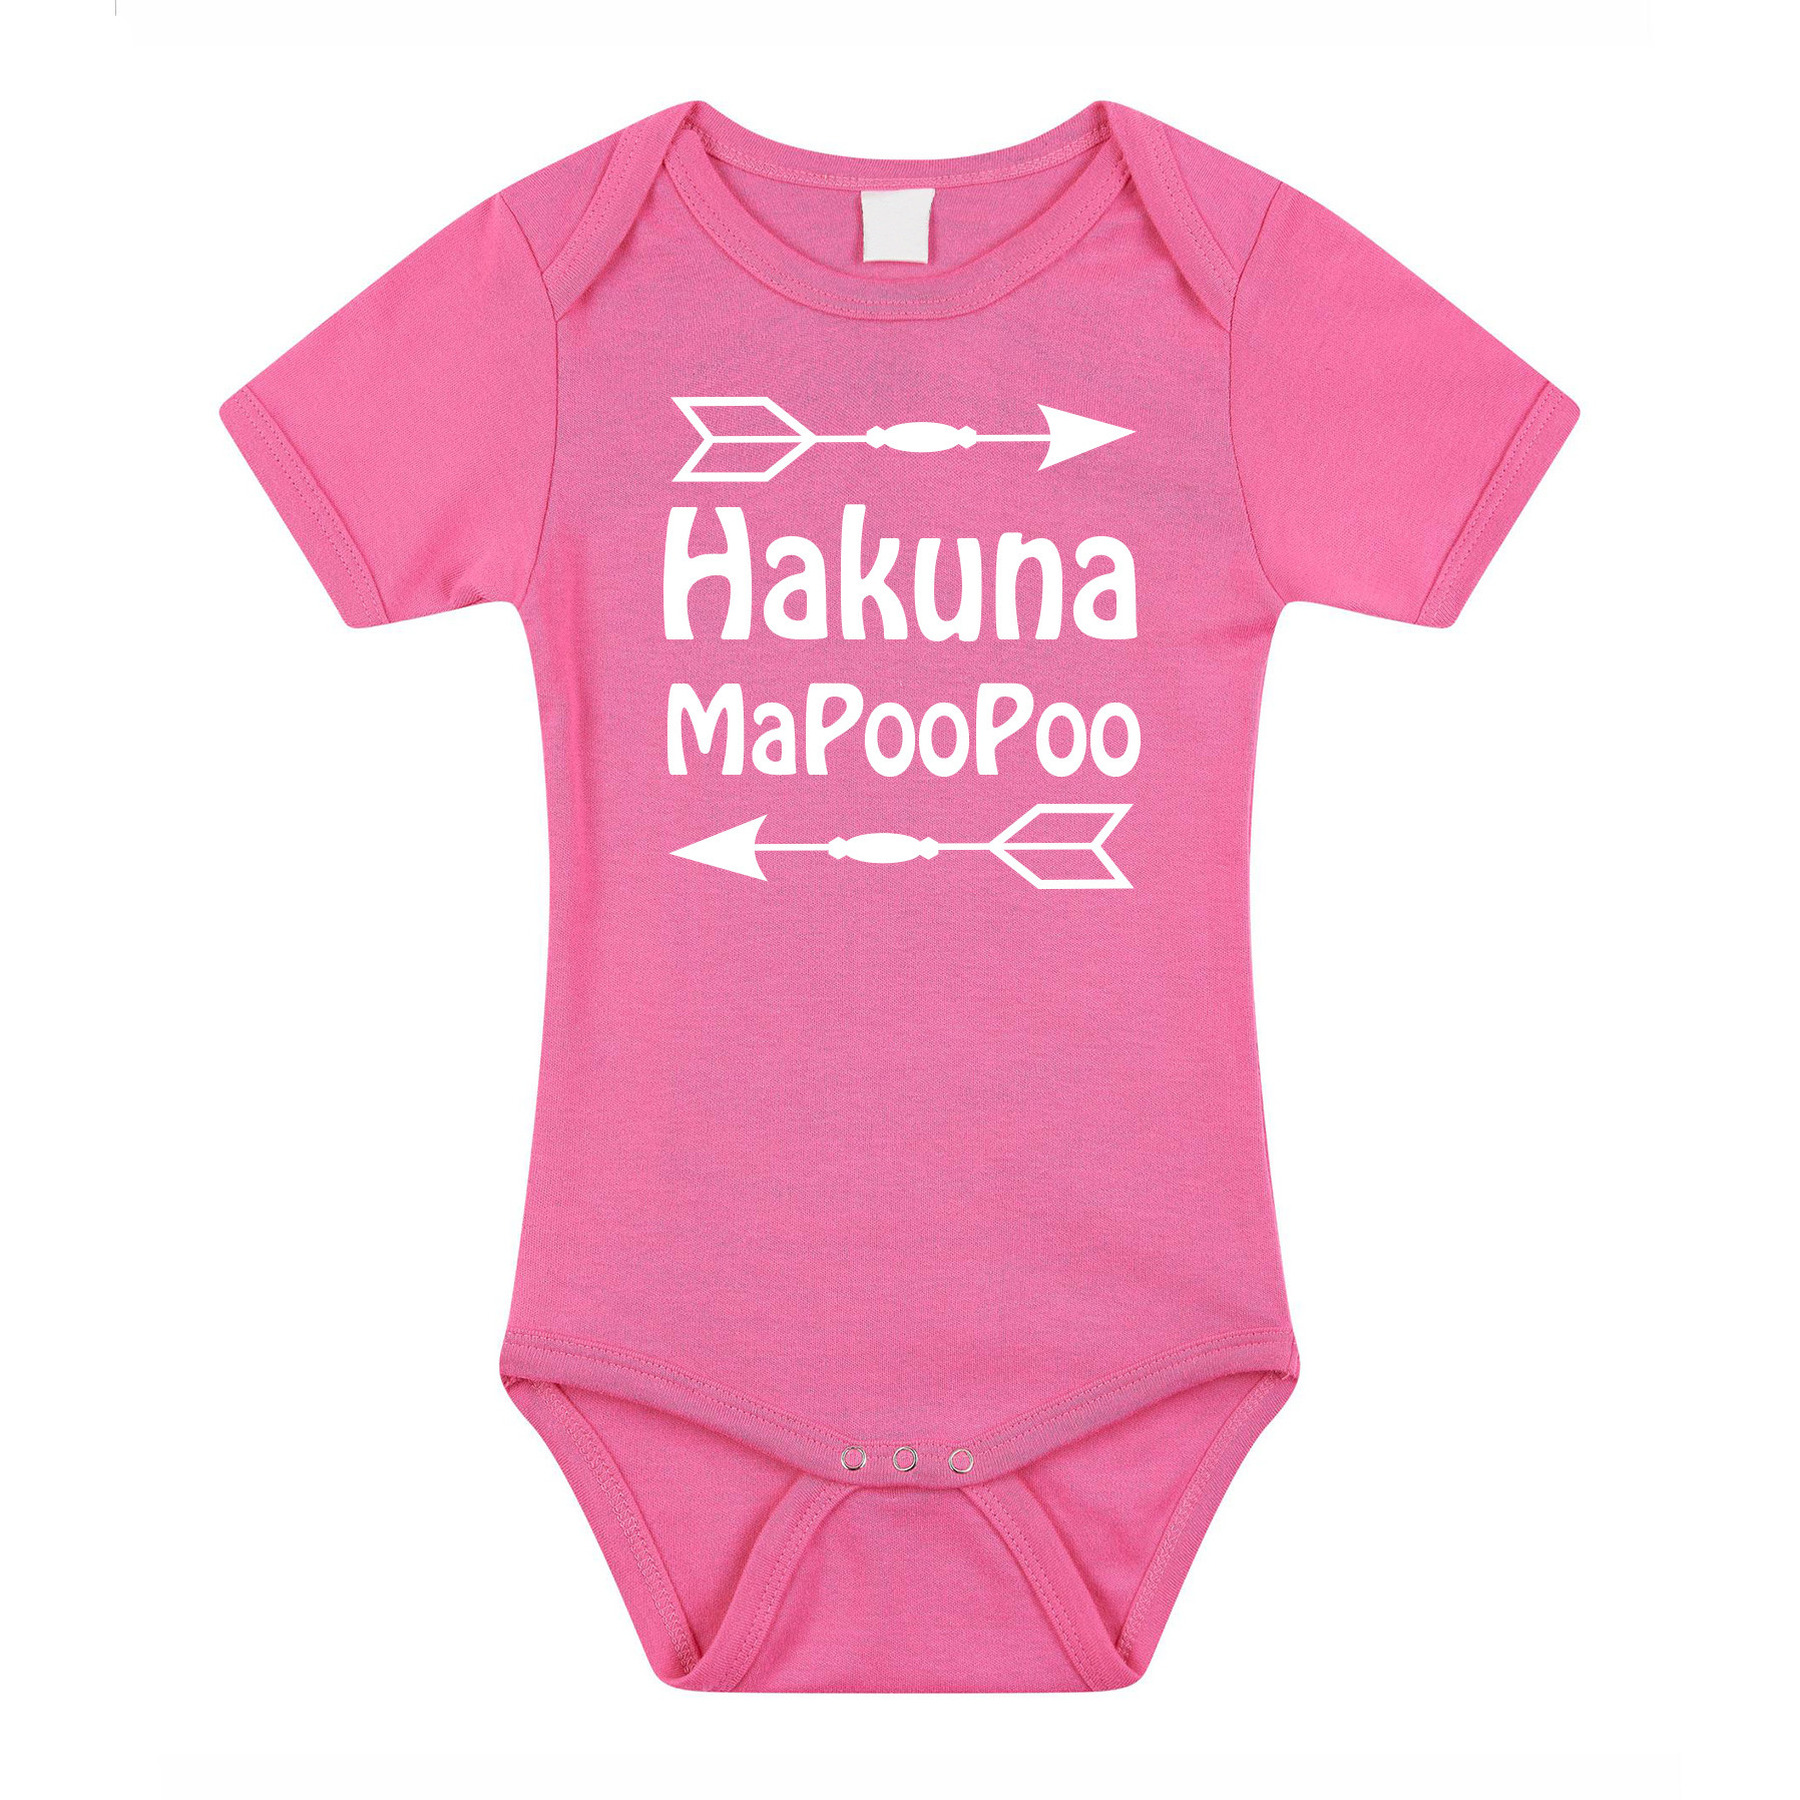 Bellatio Decorations Baby rompertje hakuna mapoopoo - roze kraam cadeau babyshower